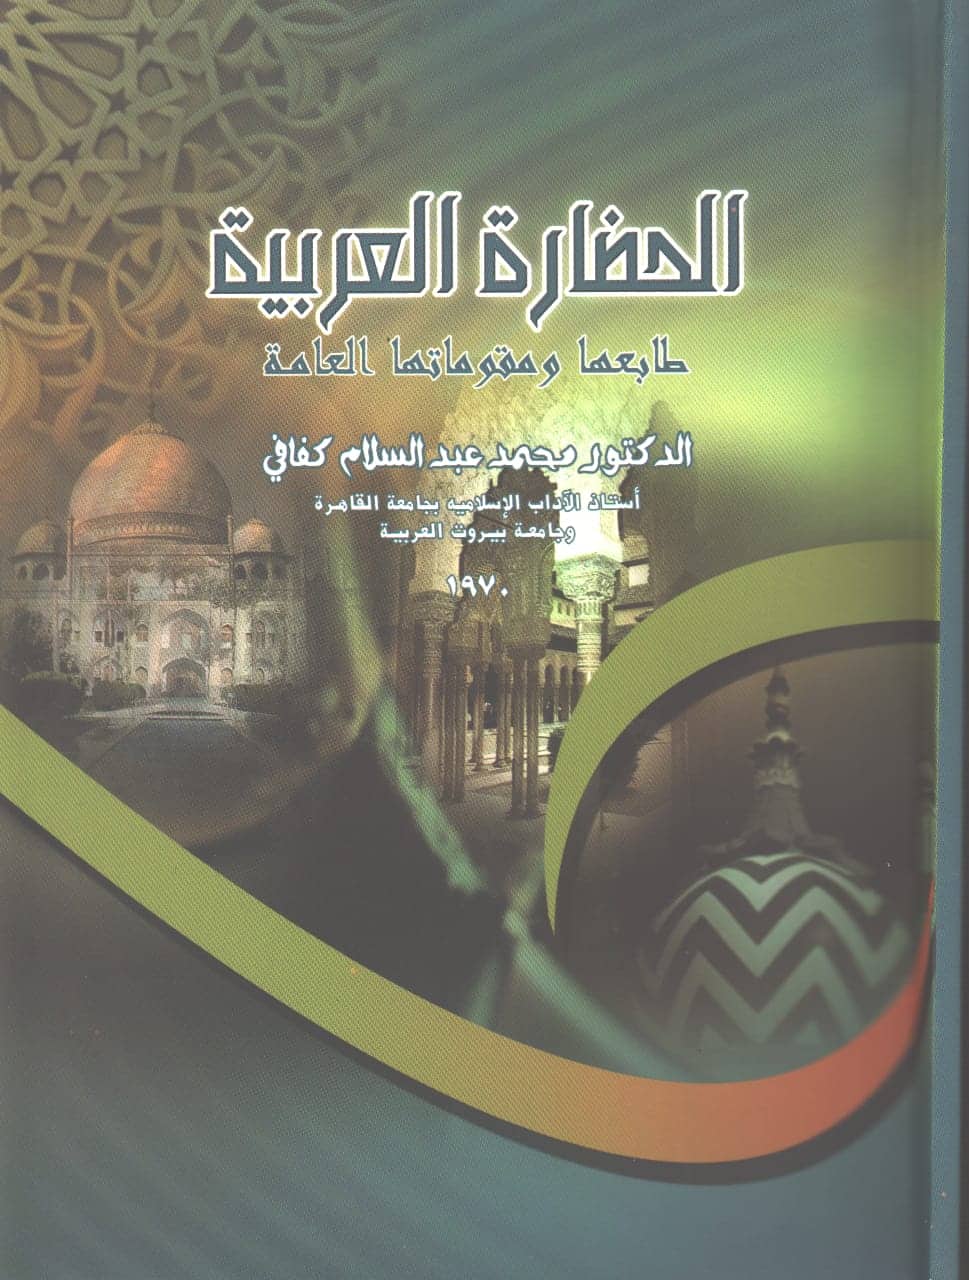 الحضارة العربية طابعها ومقوماتها العامة كتاب للدكتور محمد عبد السلام كفافي